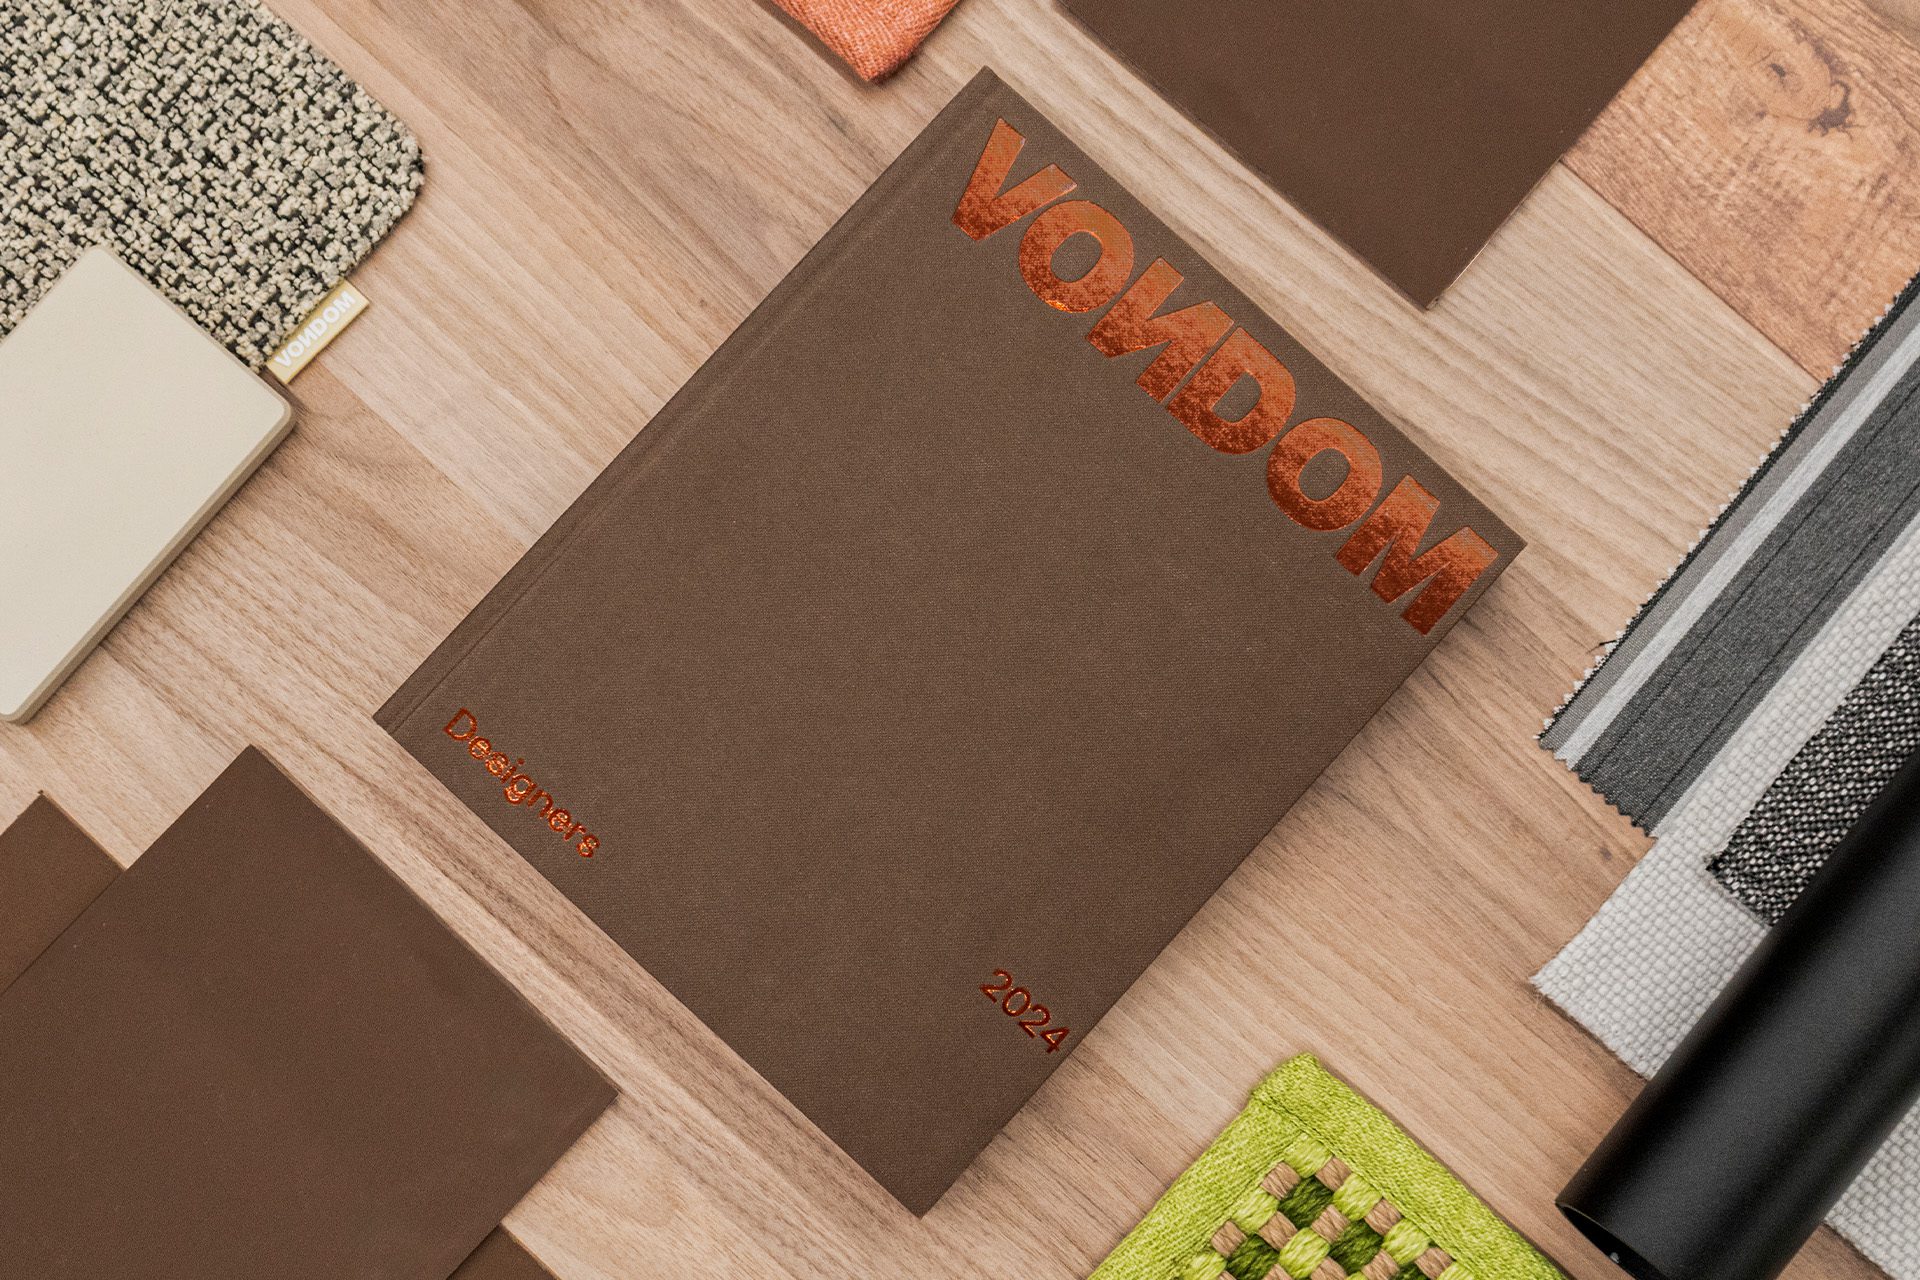 Descubre el nuevo catálogo de muebles de Vondom